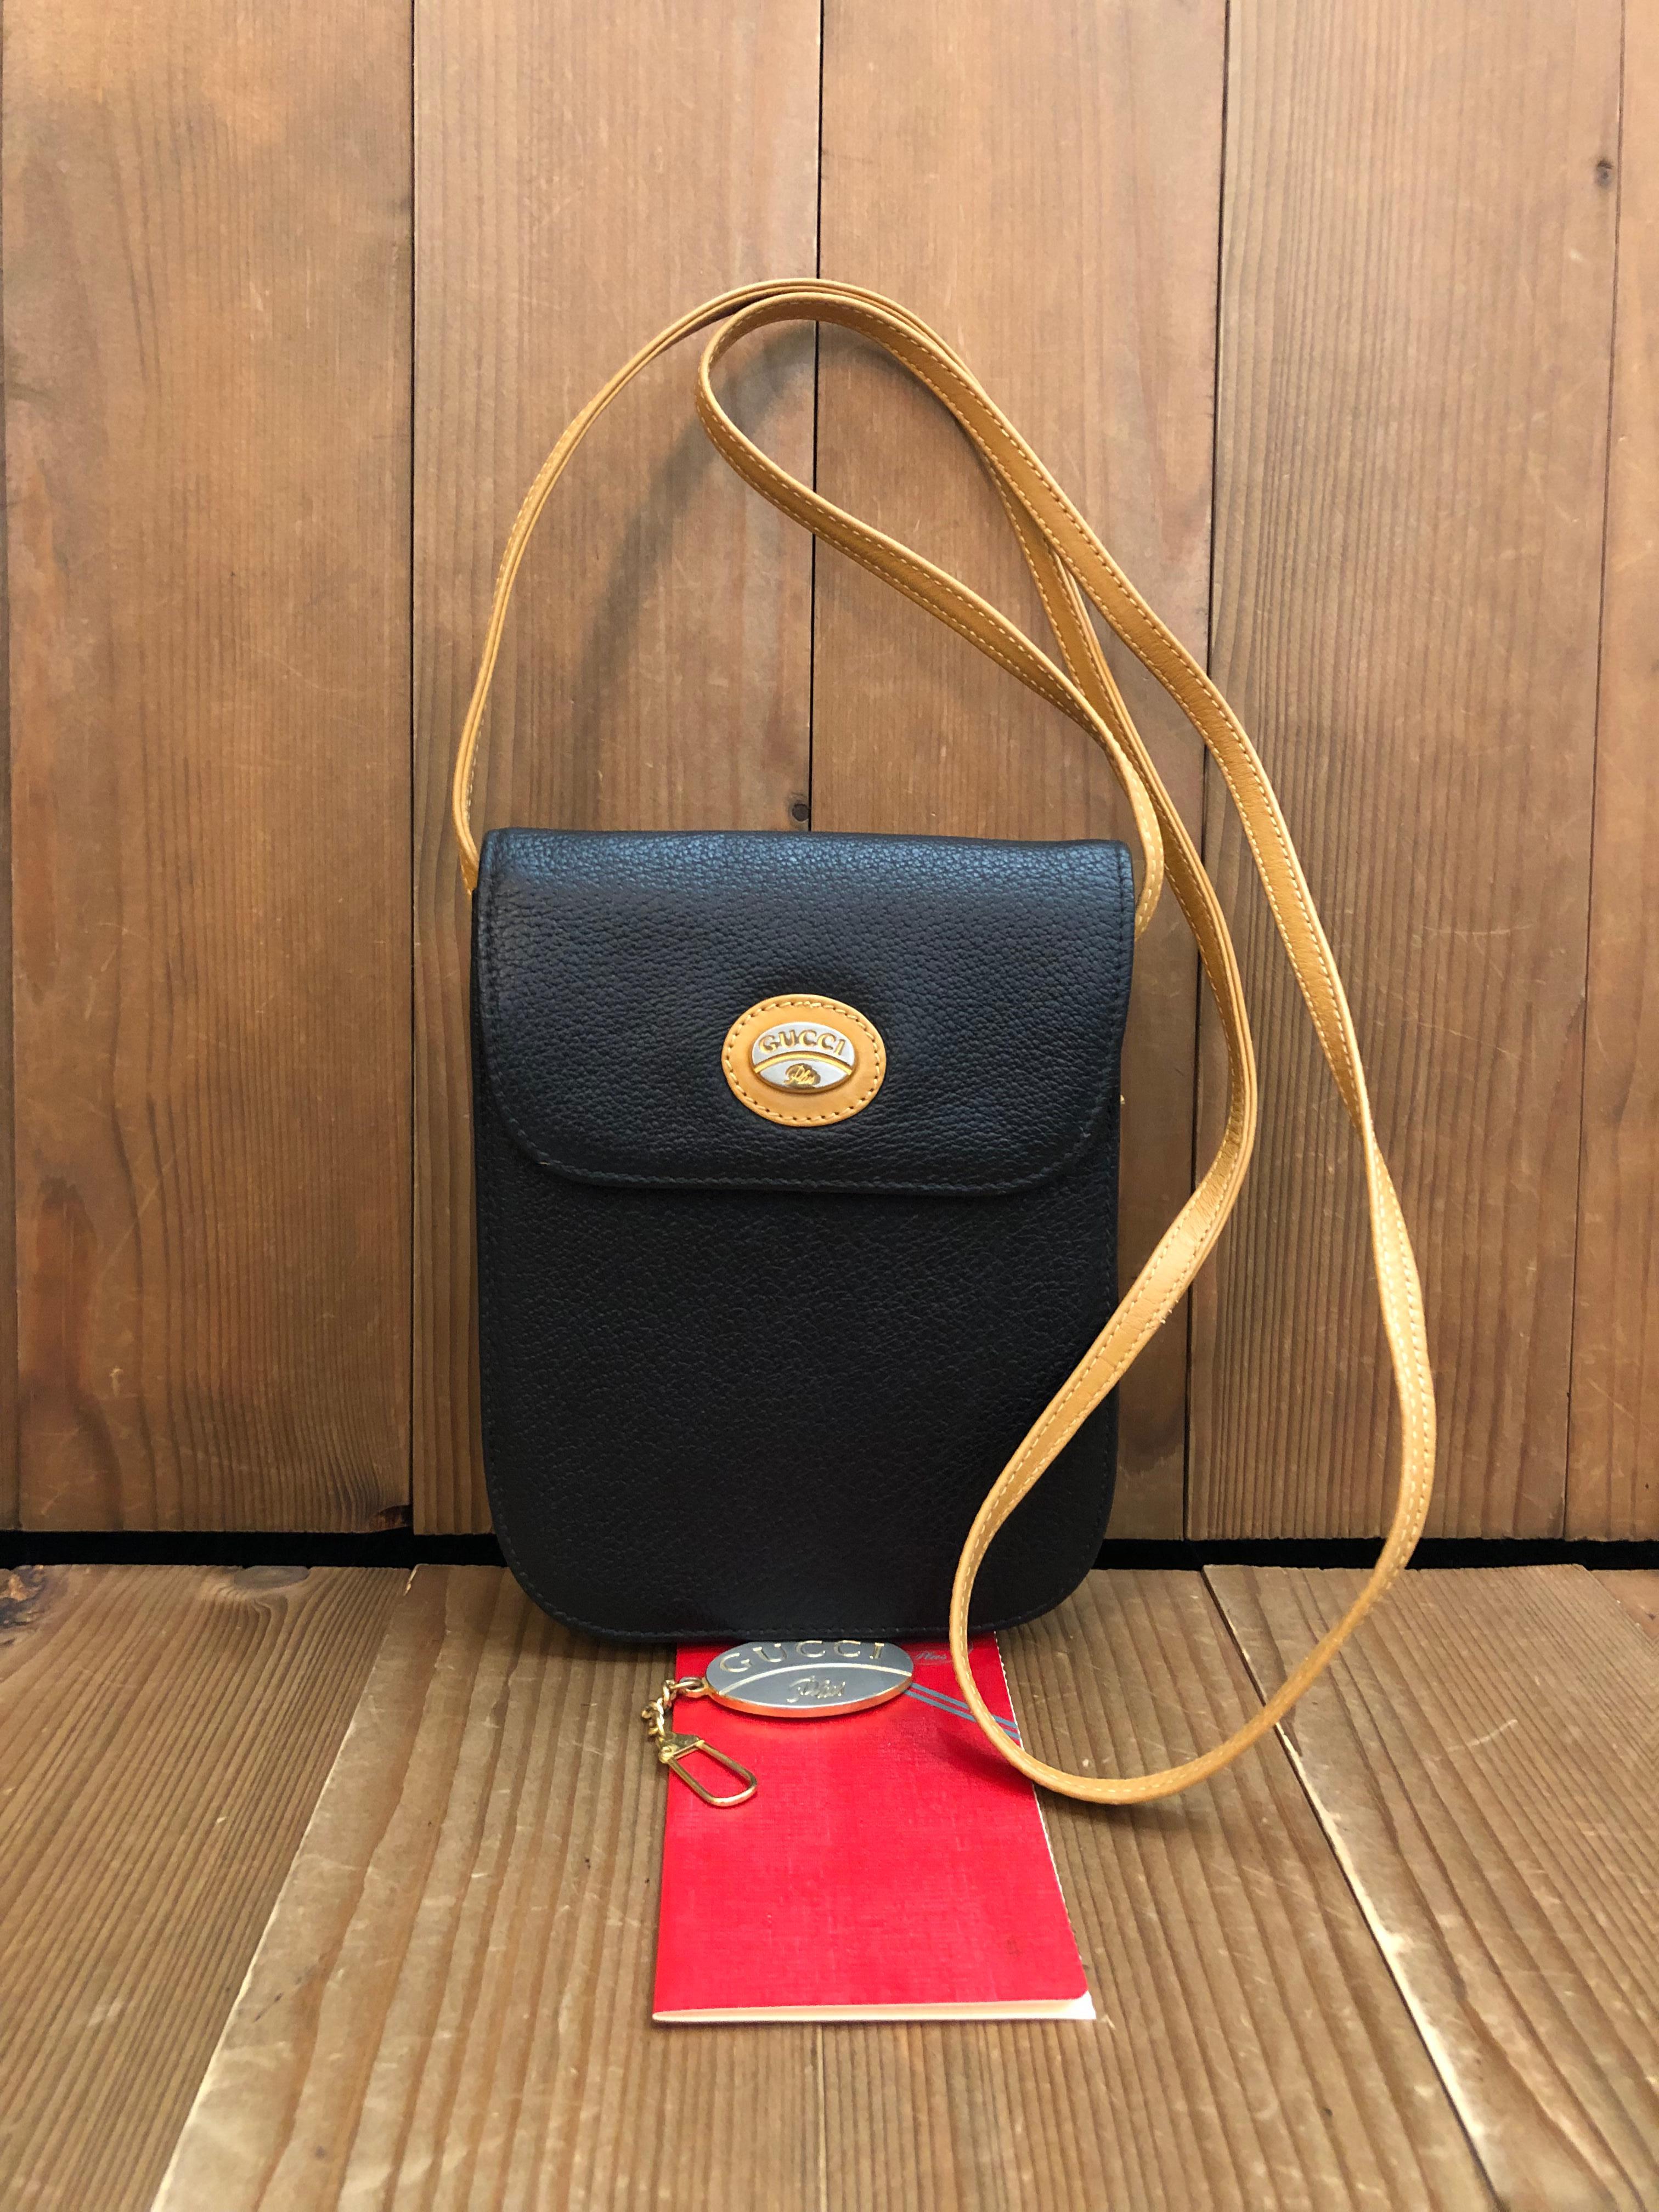 Diese vinatge GUCCI Plus Mini Crossbody Bag ist aus Kalbsleder in Schwarz und Beige gefertigt. Ein magnetischer Druckknopfverschluss auf der Vorderseite führt zu einem beigen Samtinnenraum mit einer aufgesetzten Tasche. Es ist die perfekte